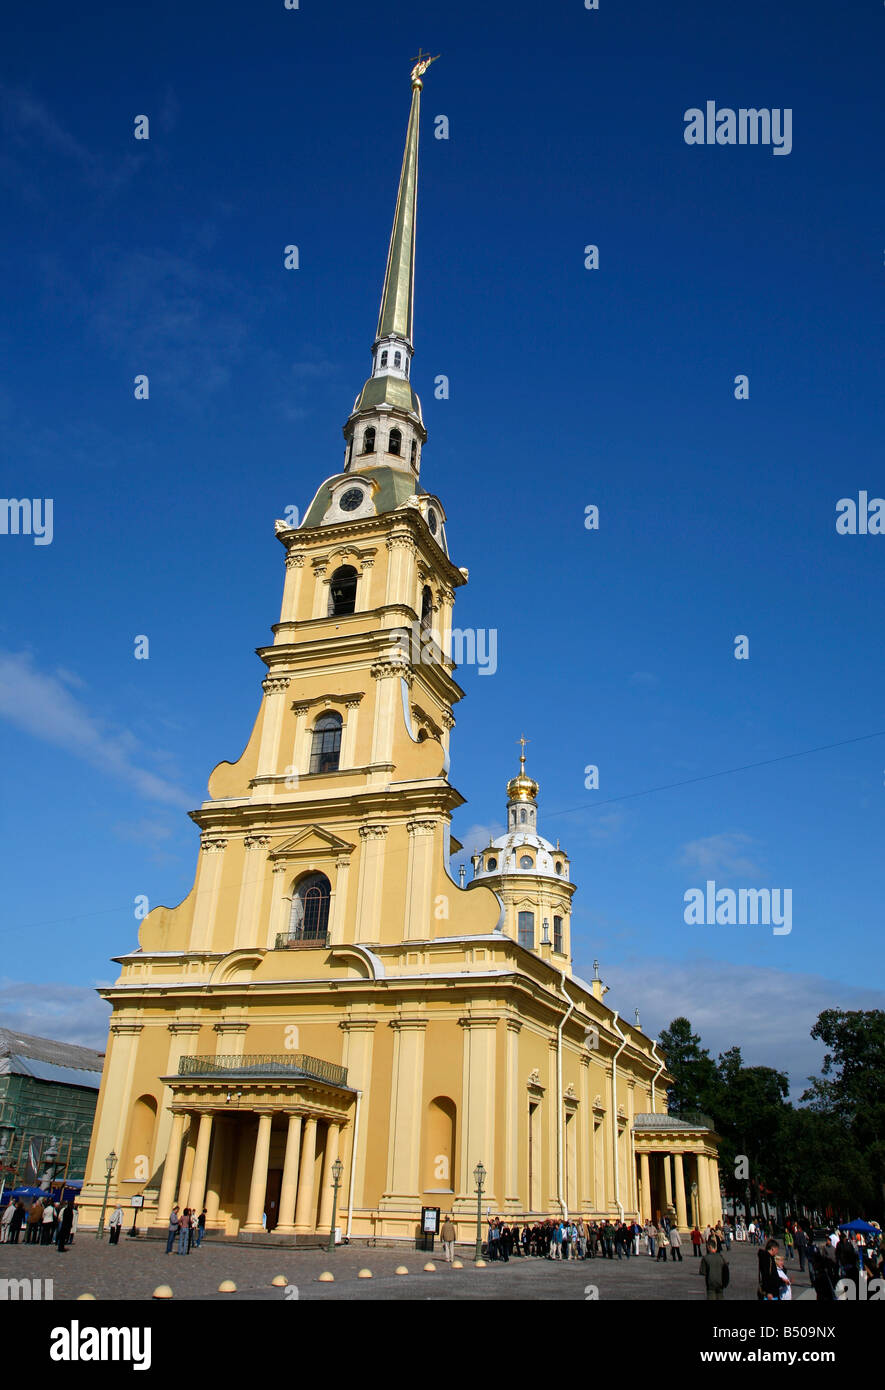 Août 2008 - La cathédrale de SS Pierre et Paul dans la forteresse Pierre et Paul St Petersburg Russia Banque D'Images